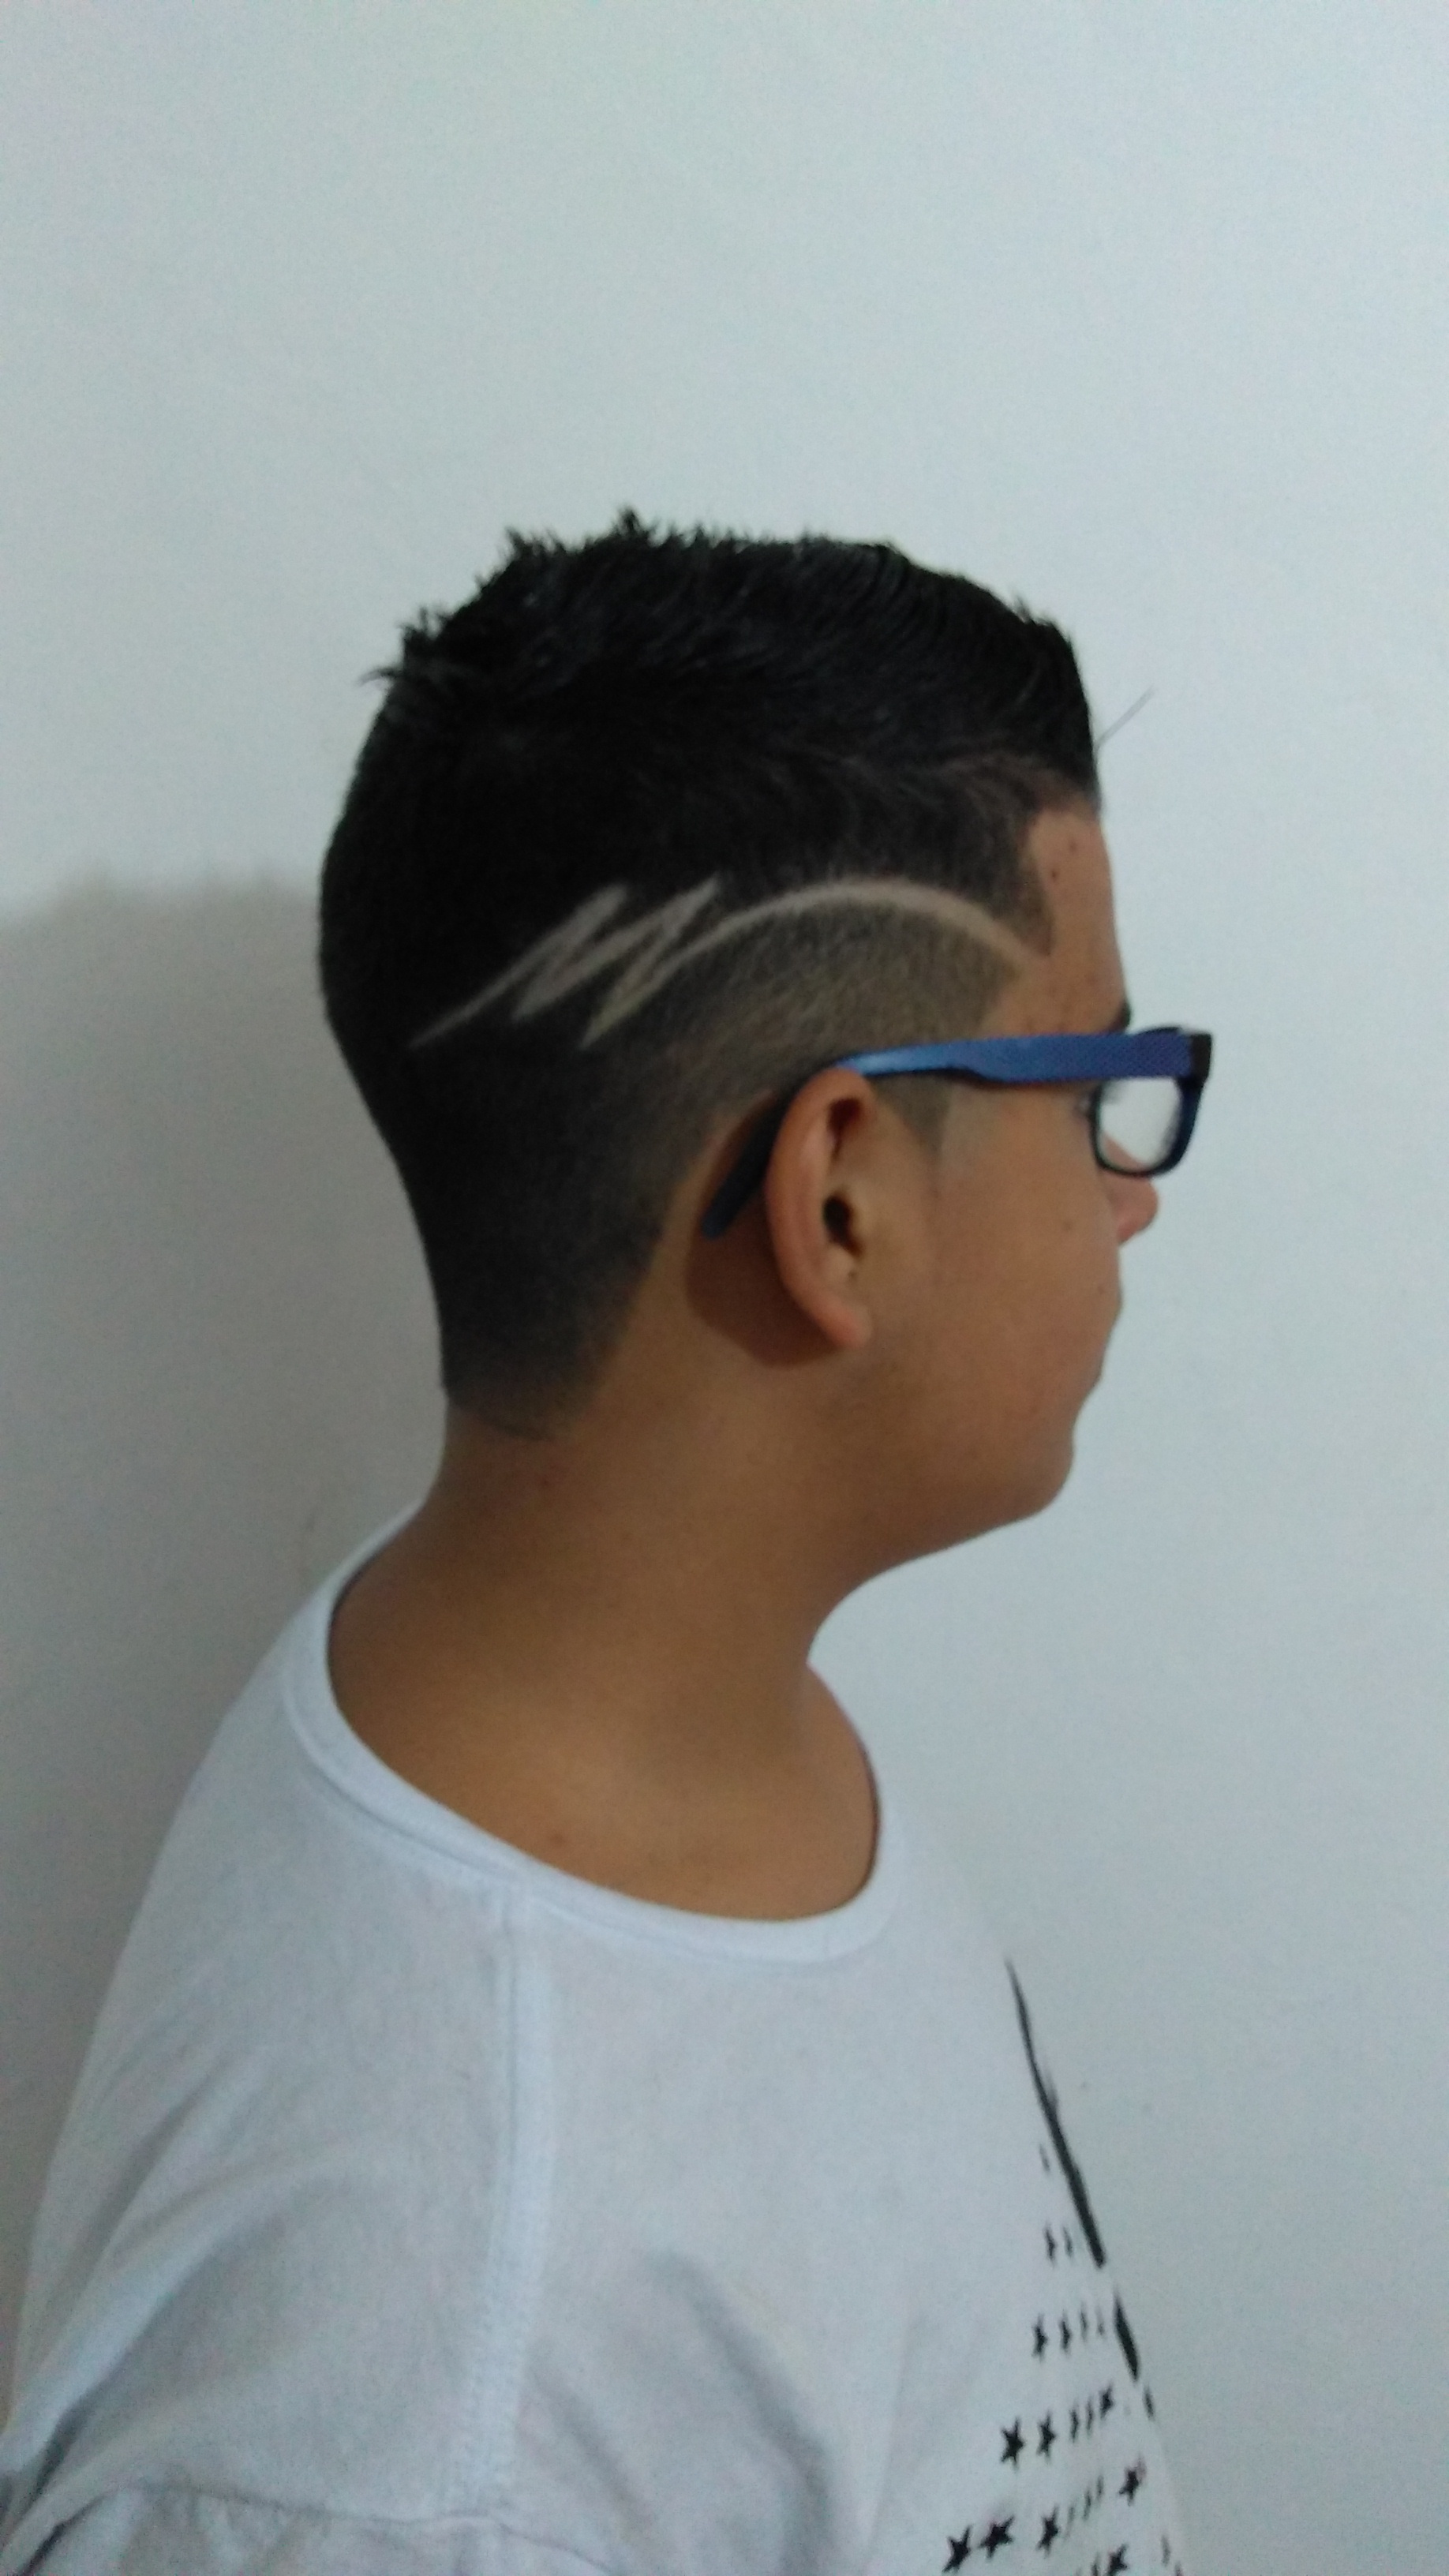 cabelo barbeiro(a)